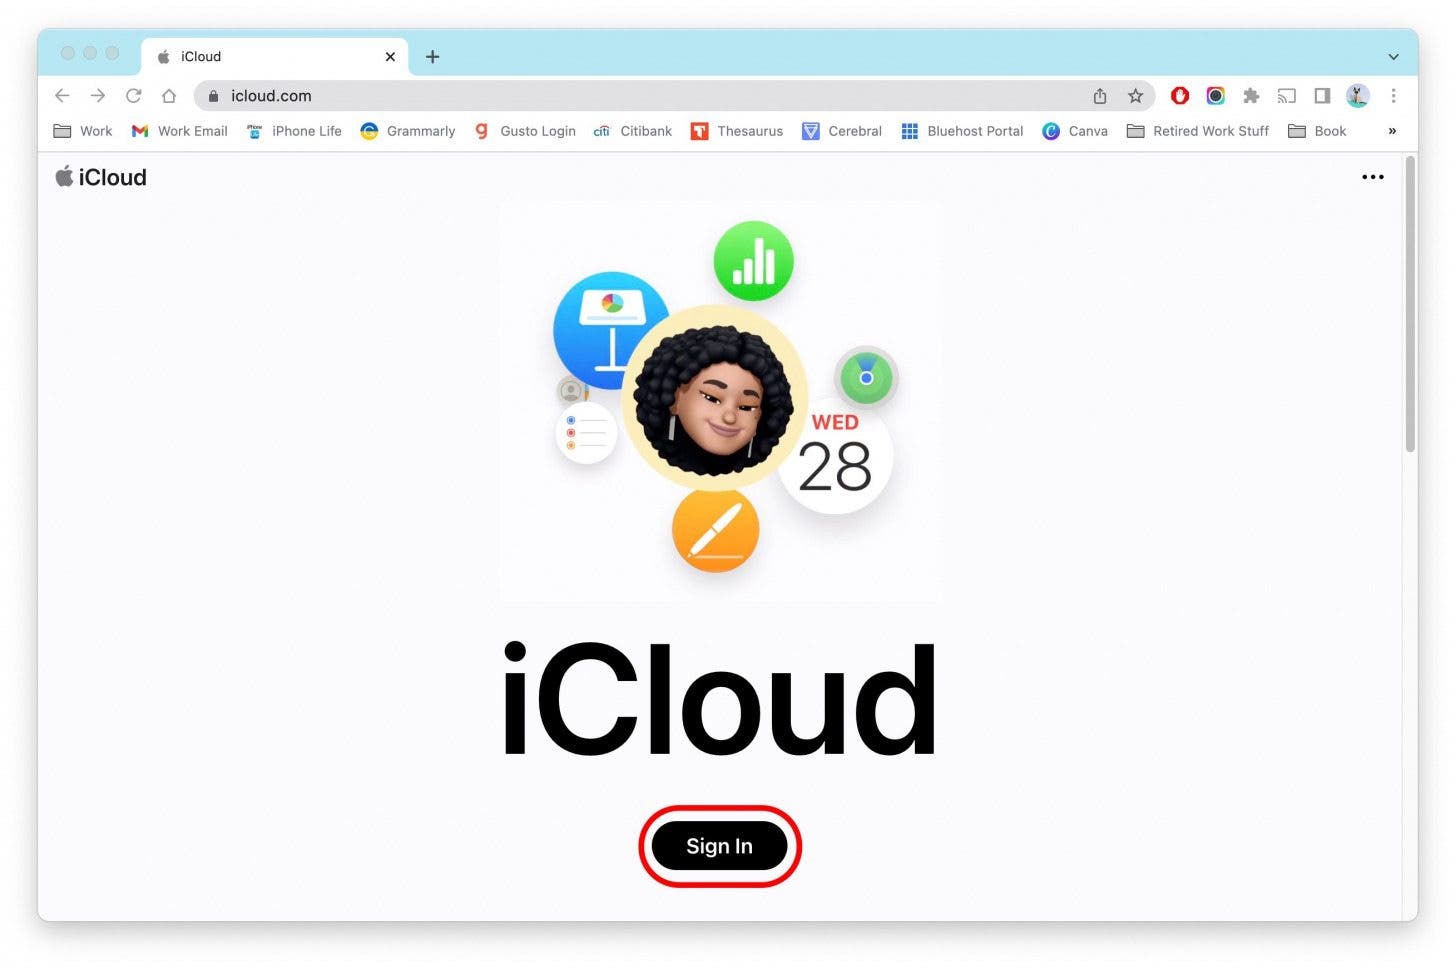 Sur l'appareil de votre choix, accédez à iCloud.com.